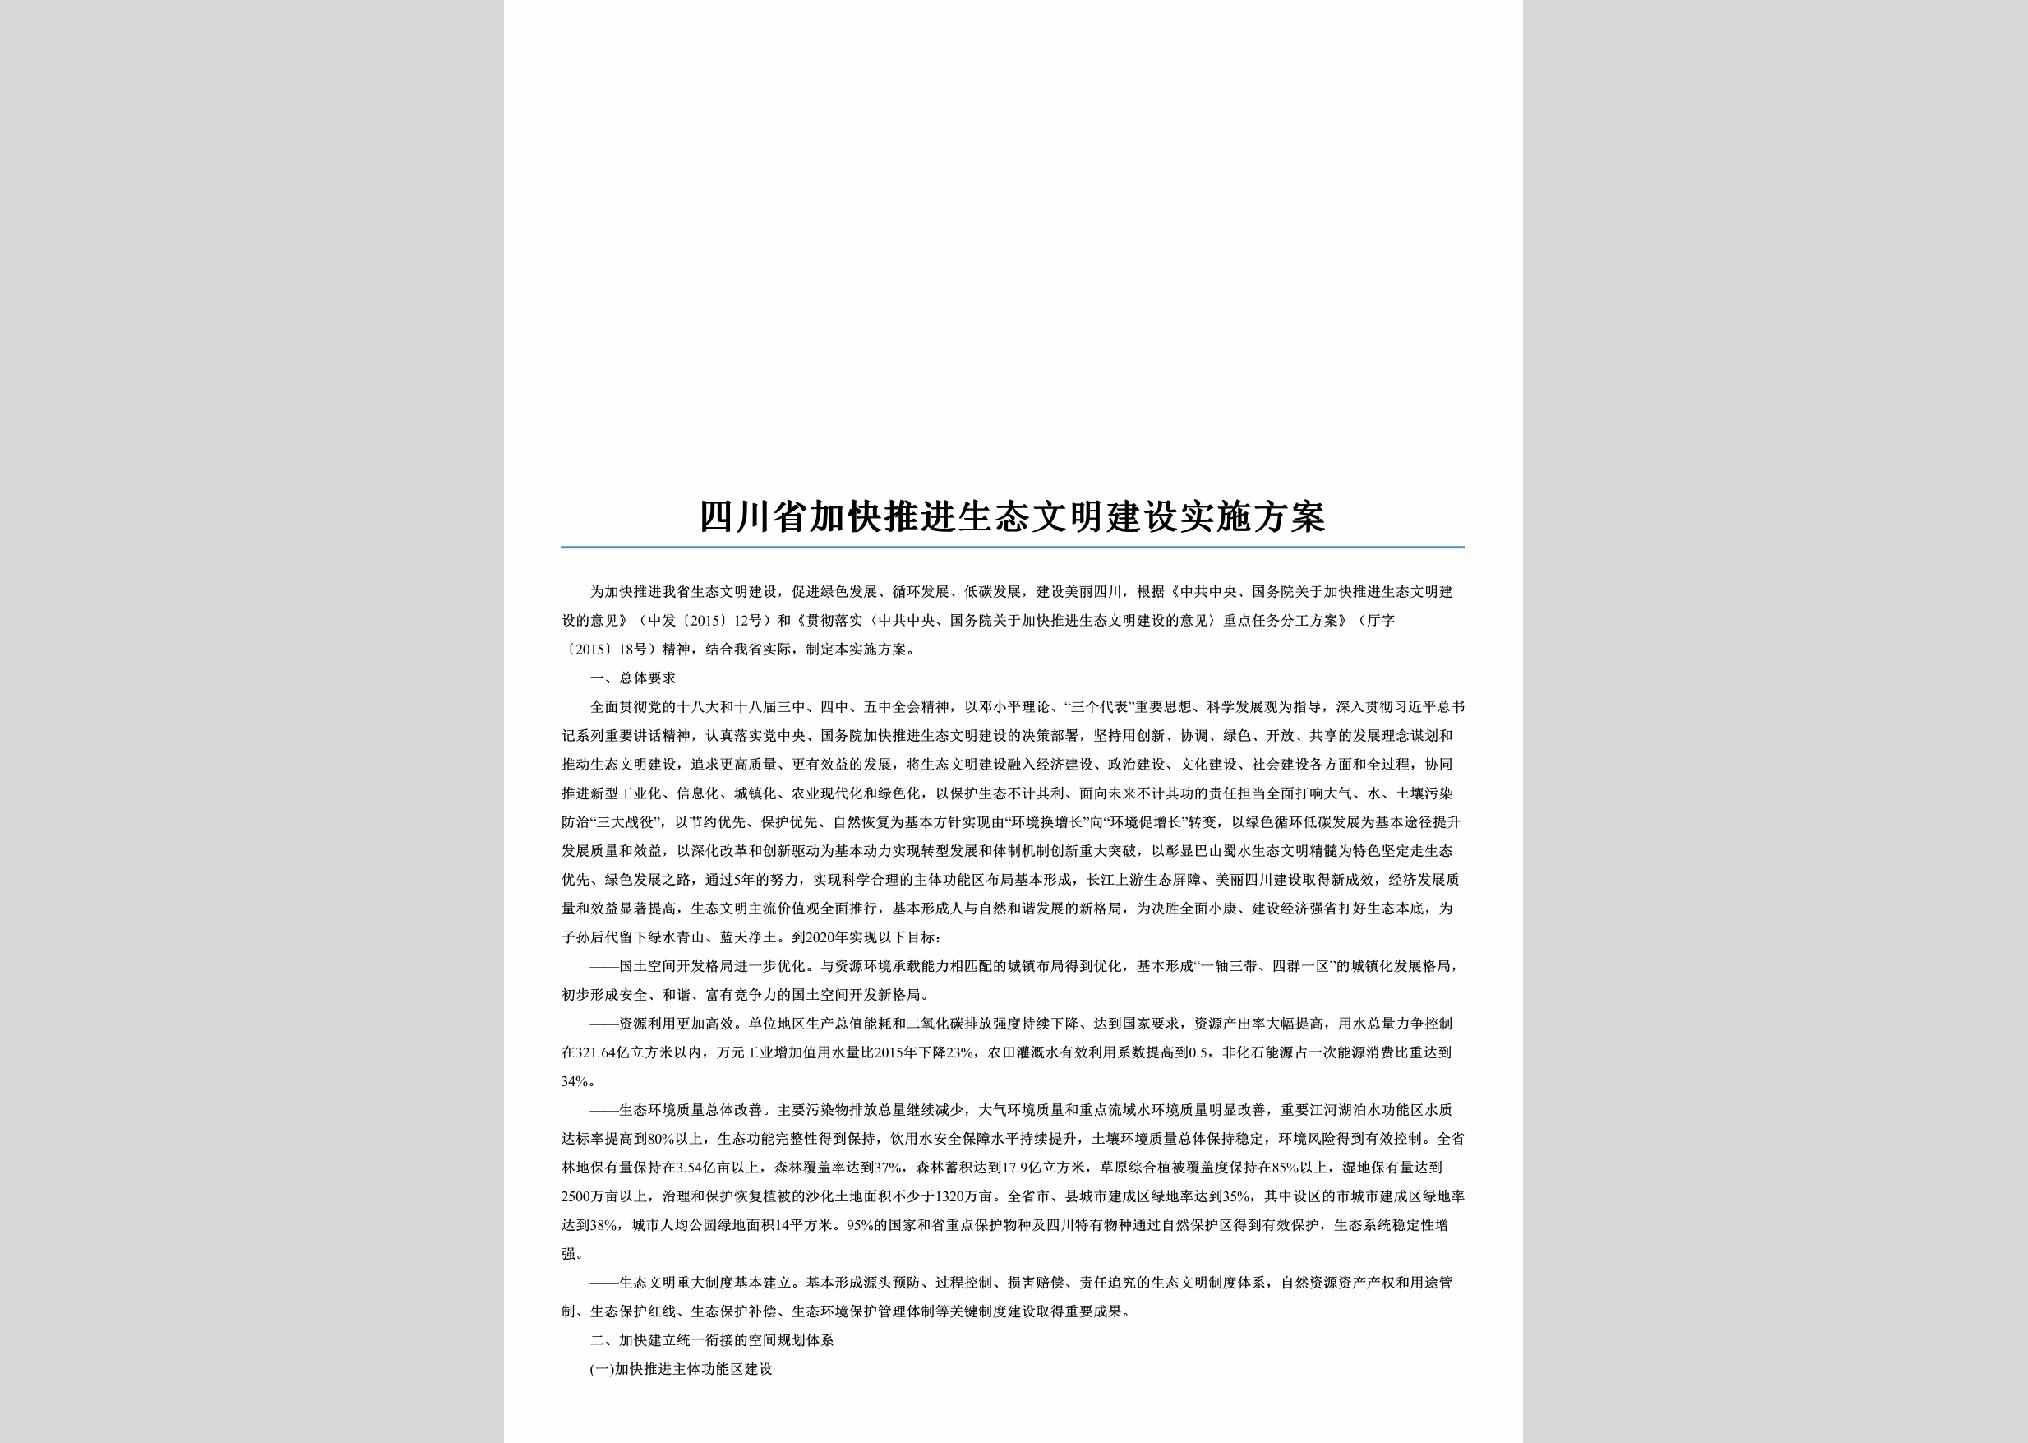 SC-STWMJSFA-2016：四川省加快推进生态文明建设实施方案